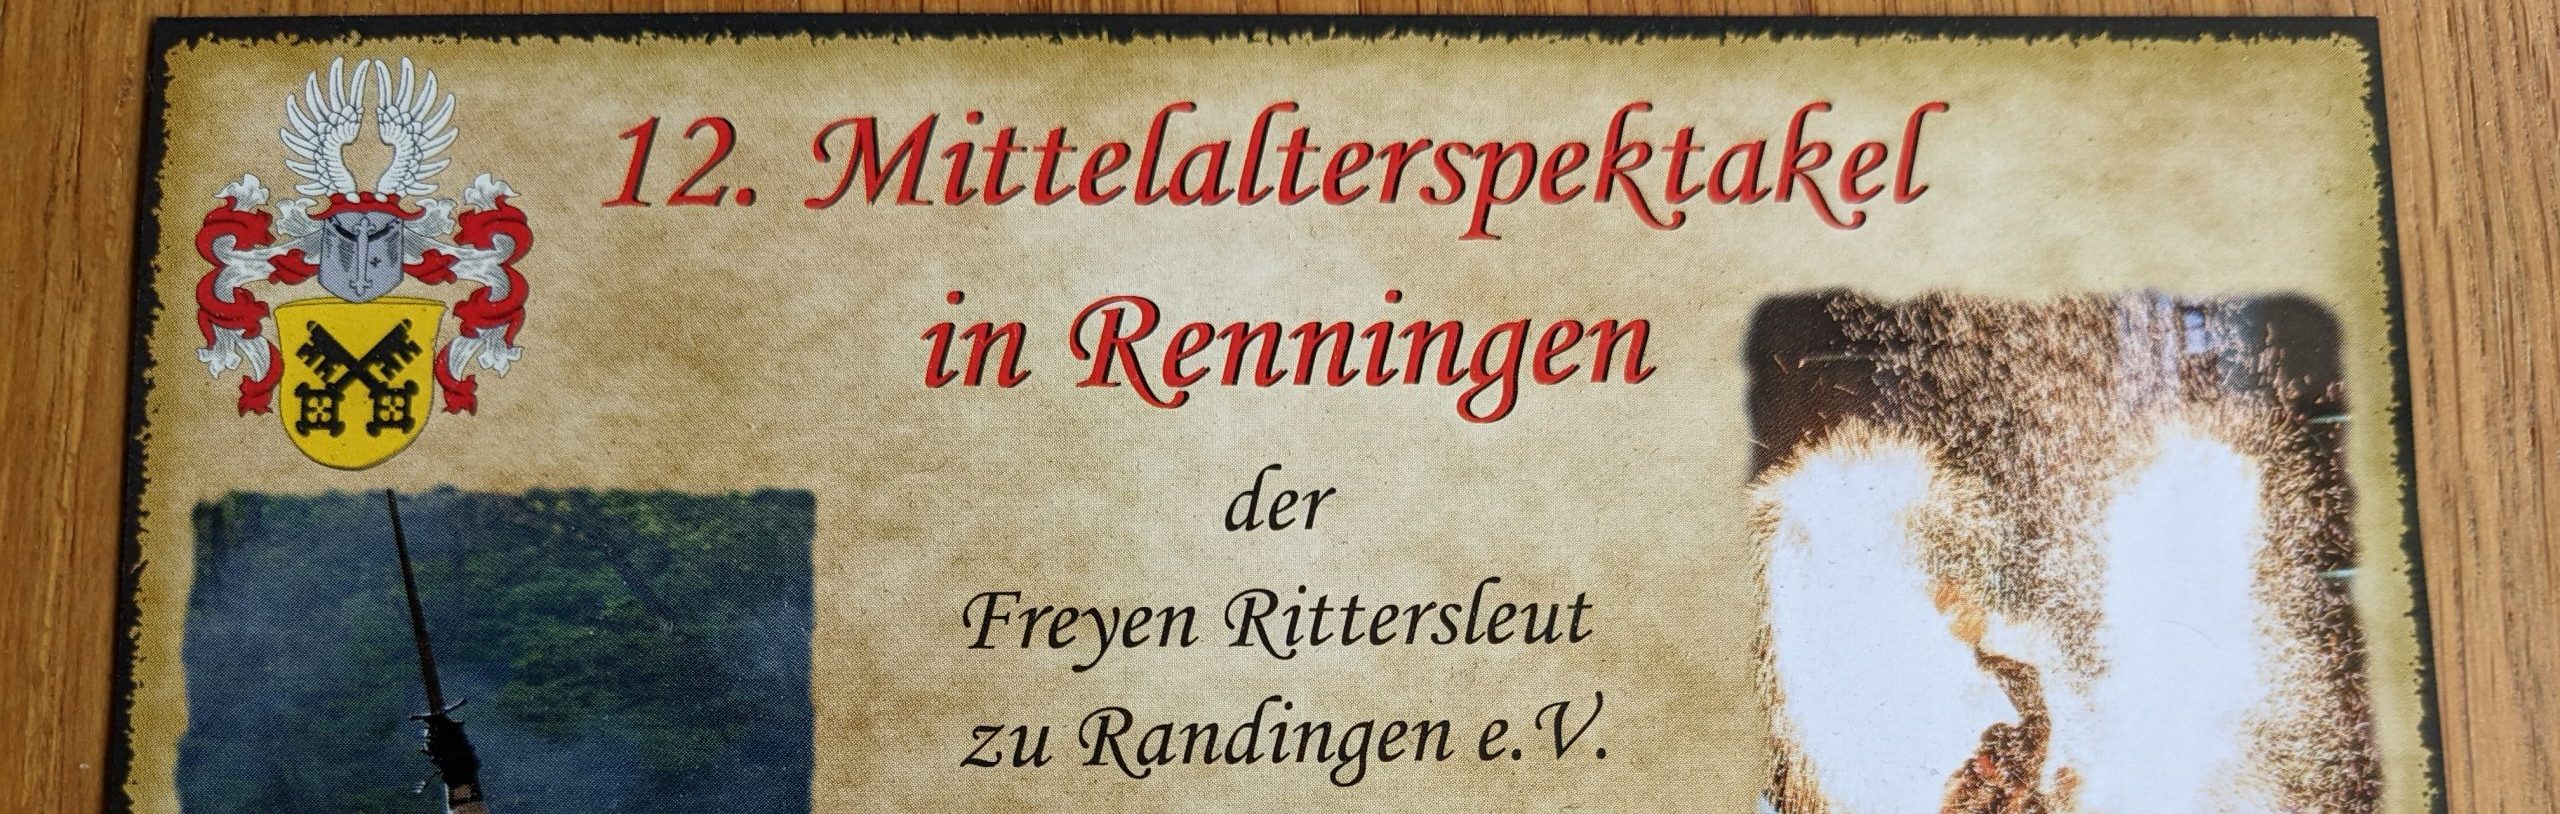 12. Mittelalterspektakel in Renningen